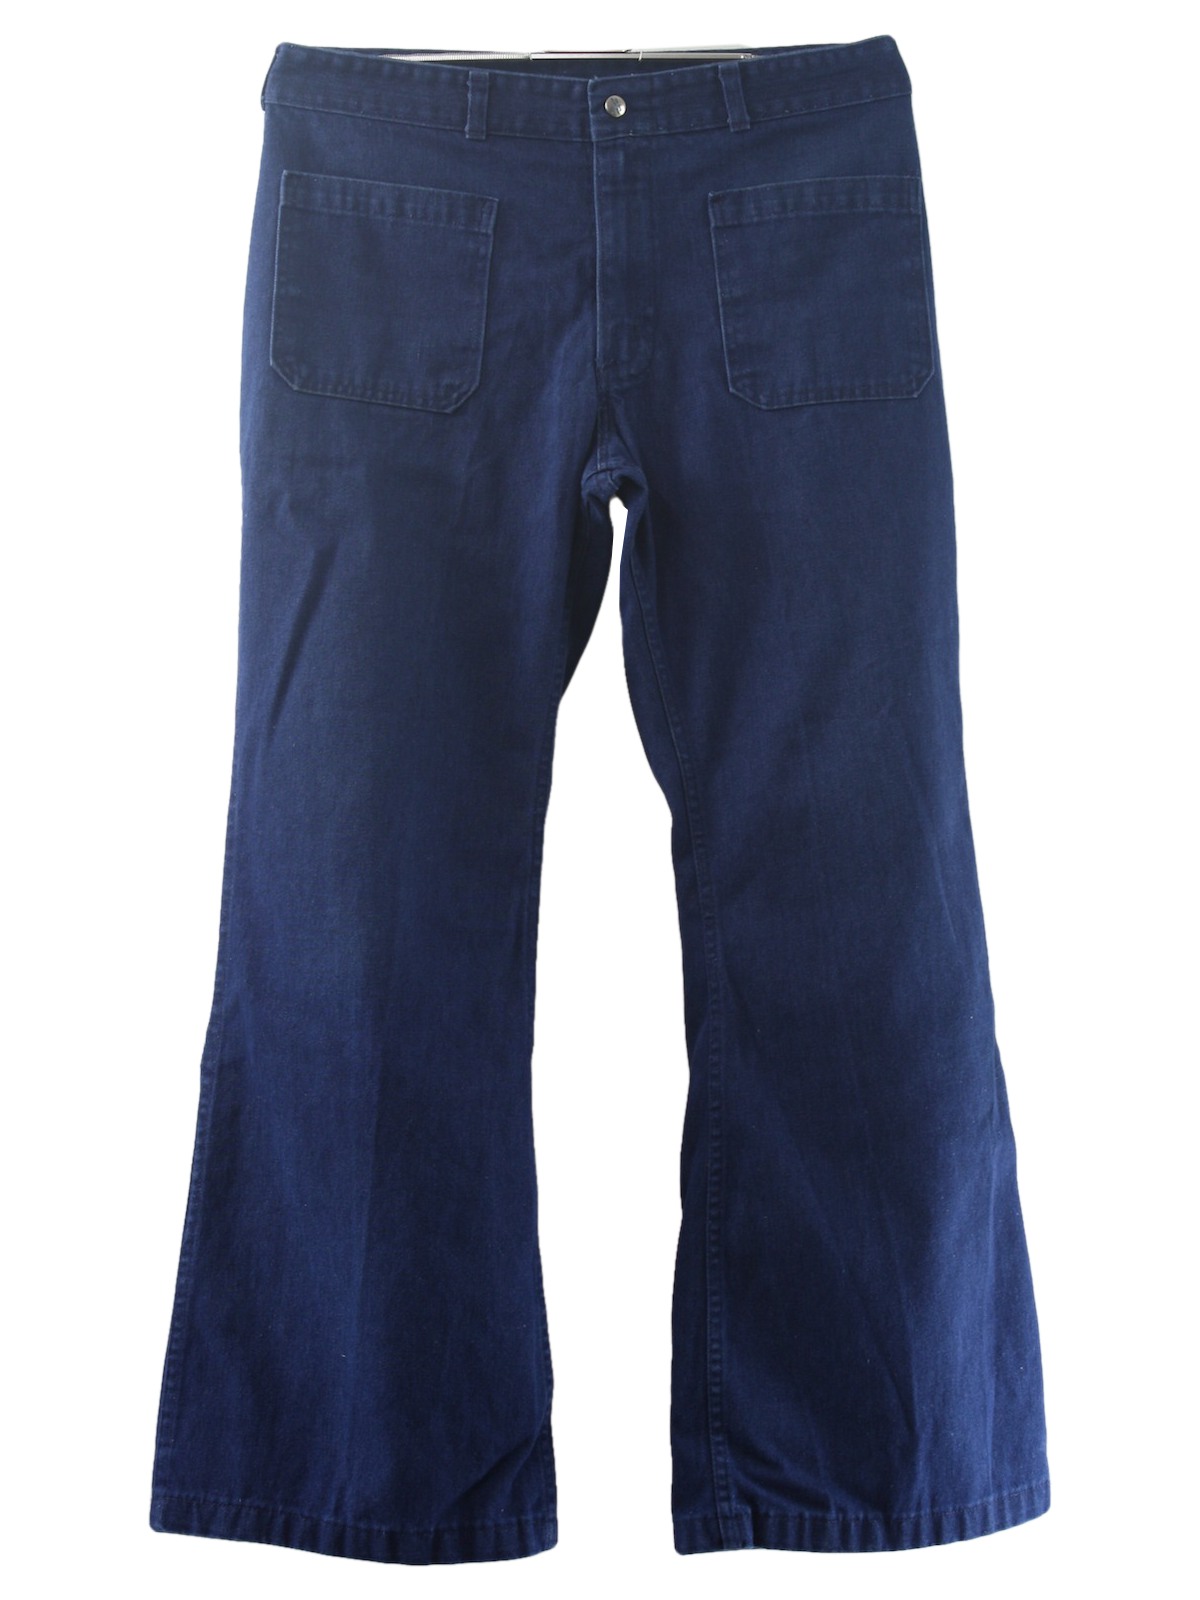 1970s Seafarer Bellbottom Pants: 70s -Seafarer- Mens blue cotton ...